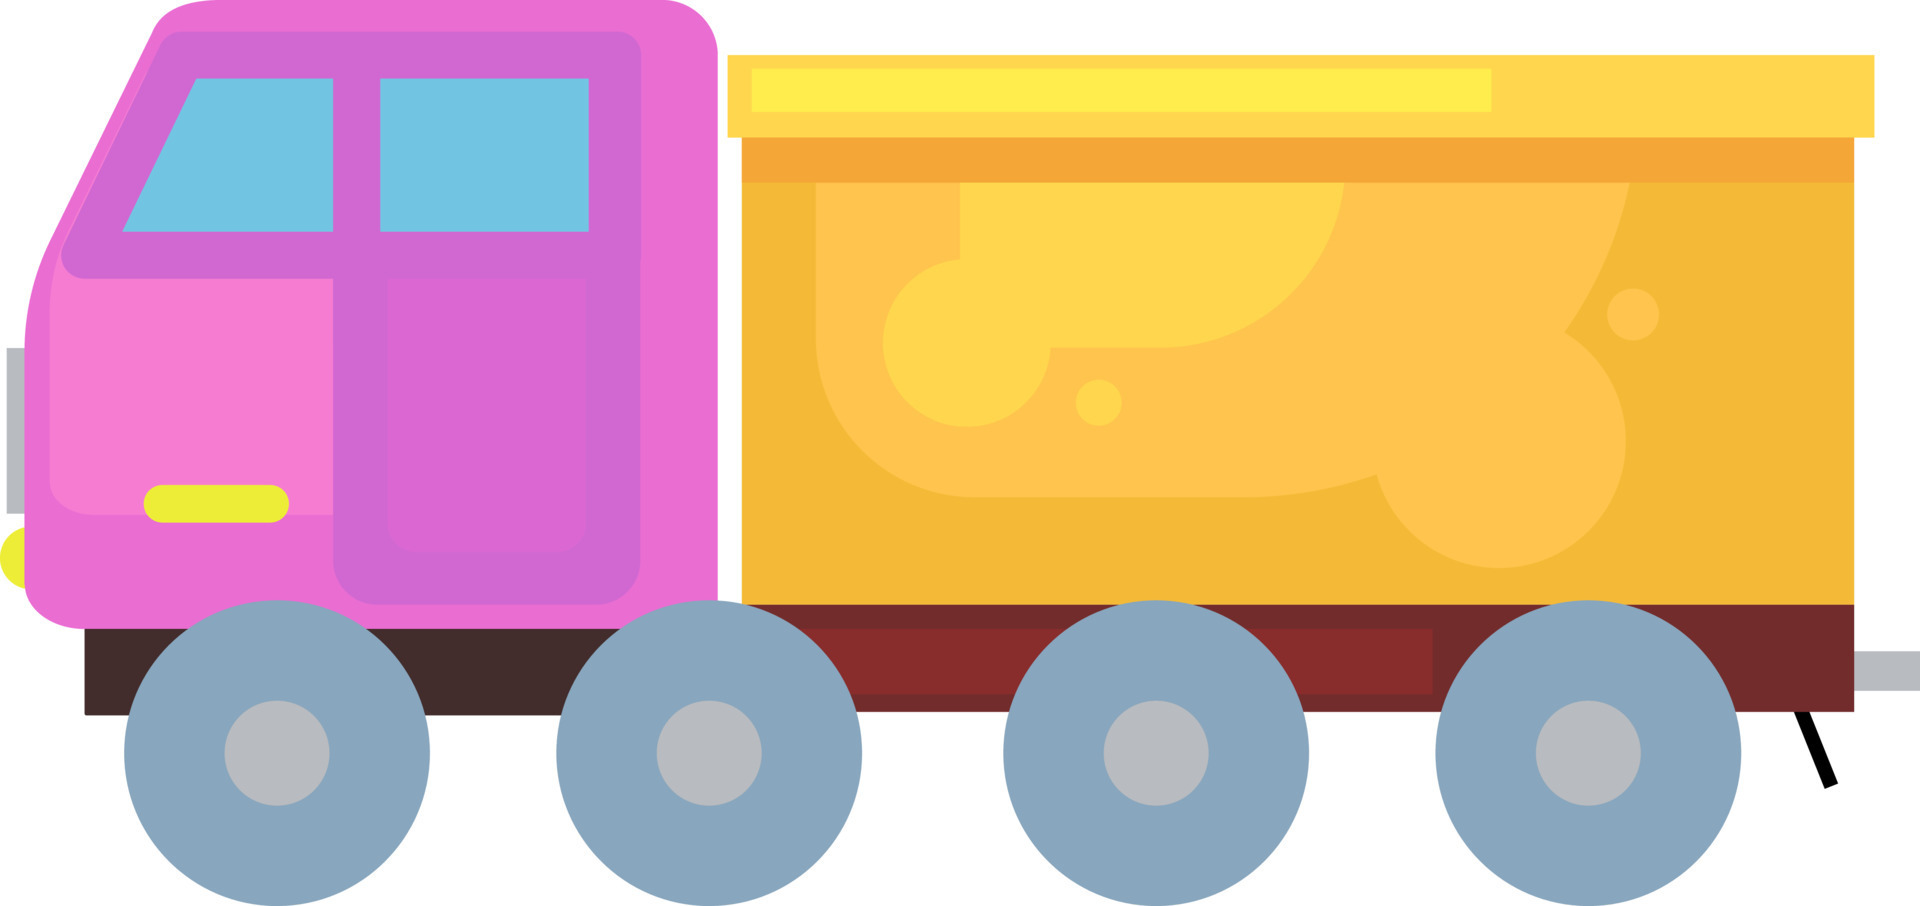 caminhão de brinquedo rosa e amarelo, ilustração, vetor em um fundo branco.  13794257 Vetor no Vecteezy